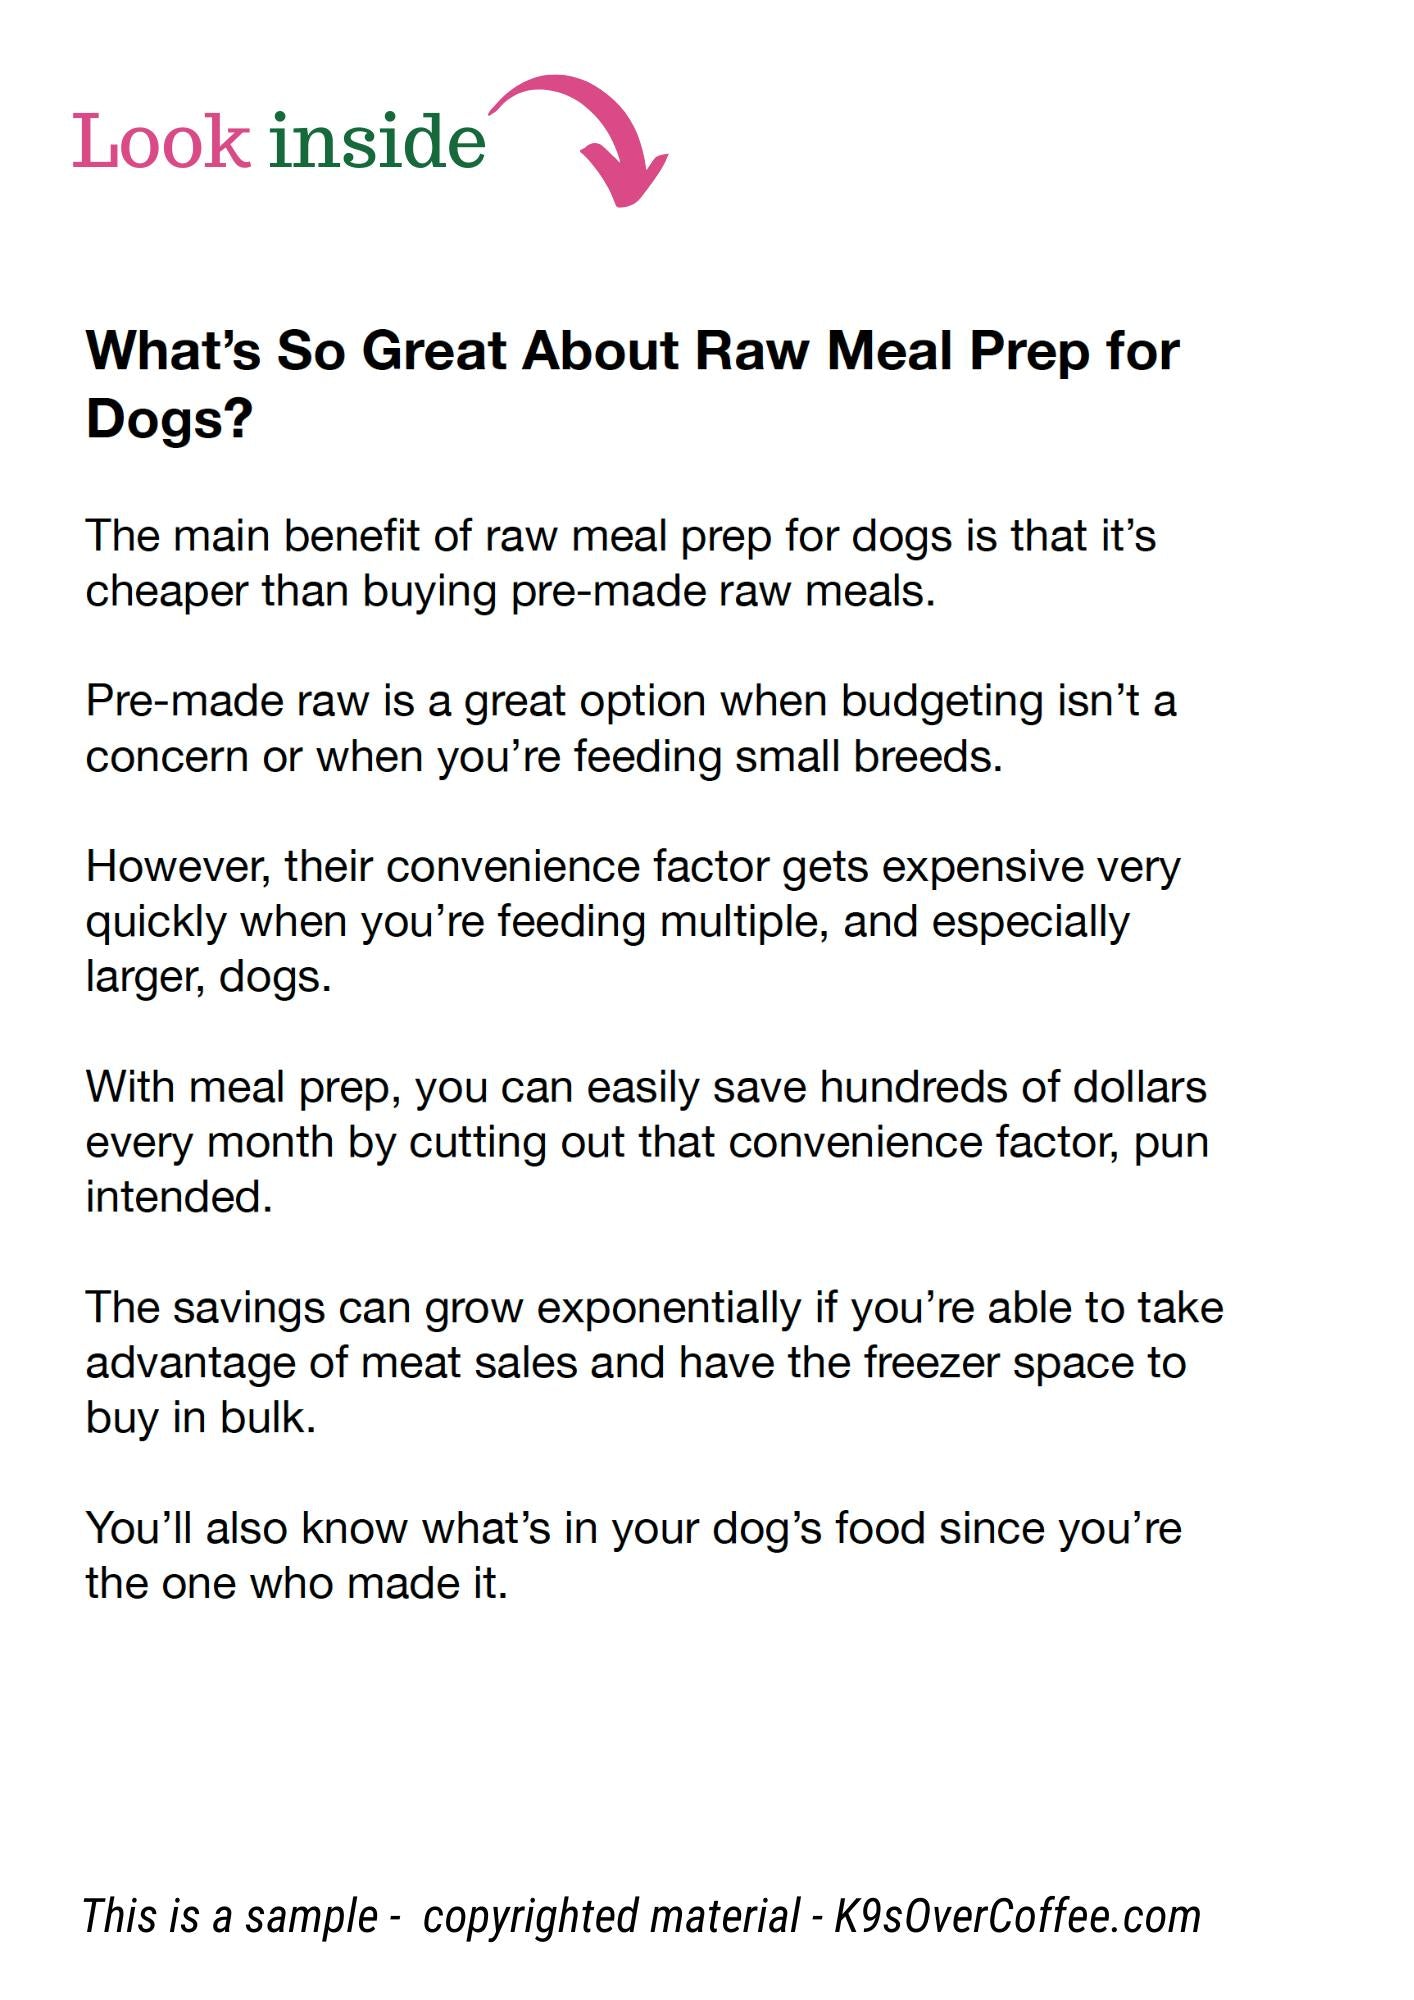 Raw Dog Food Meal Prep: Making DIY Bulk Raw Dog Food (includes 2 recipes)